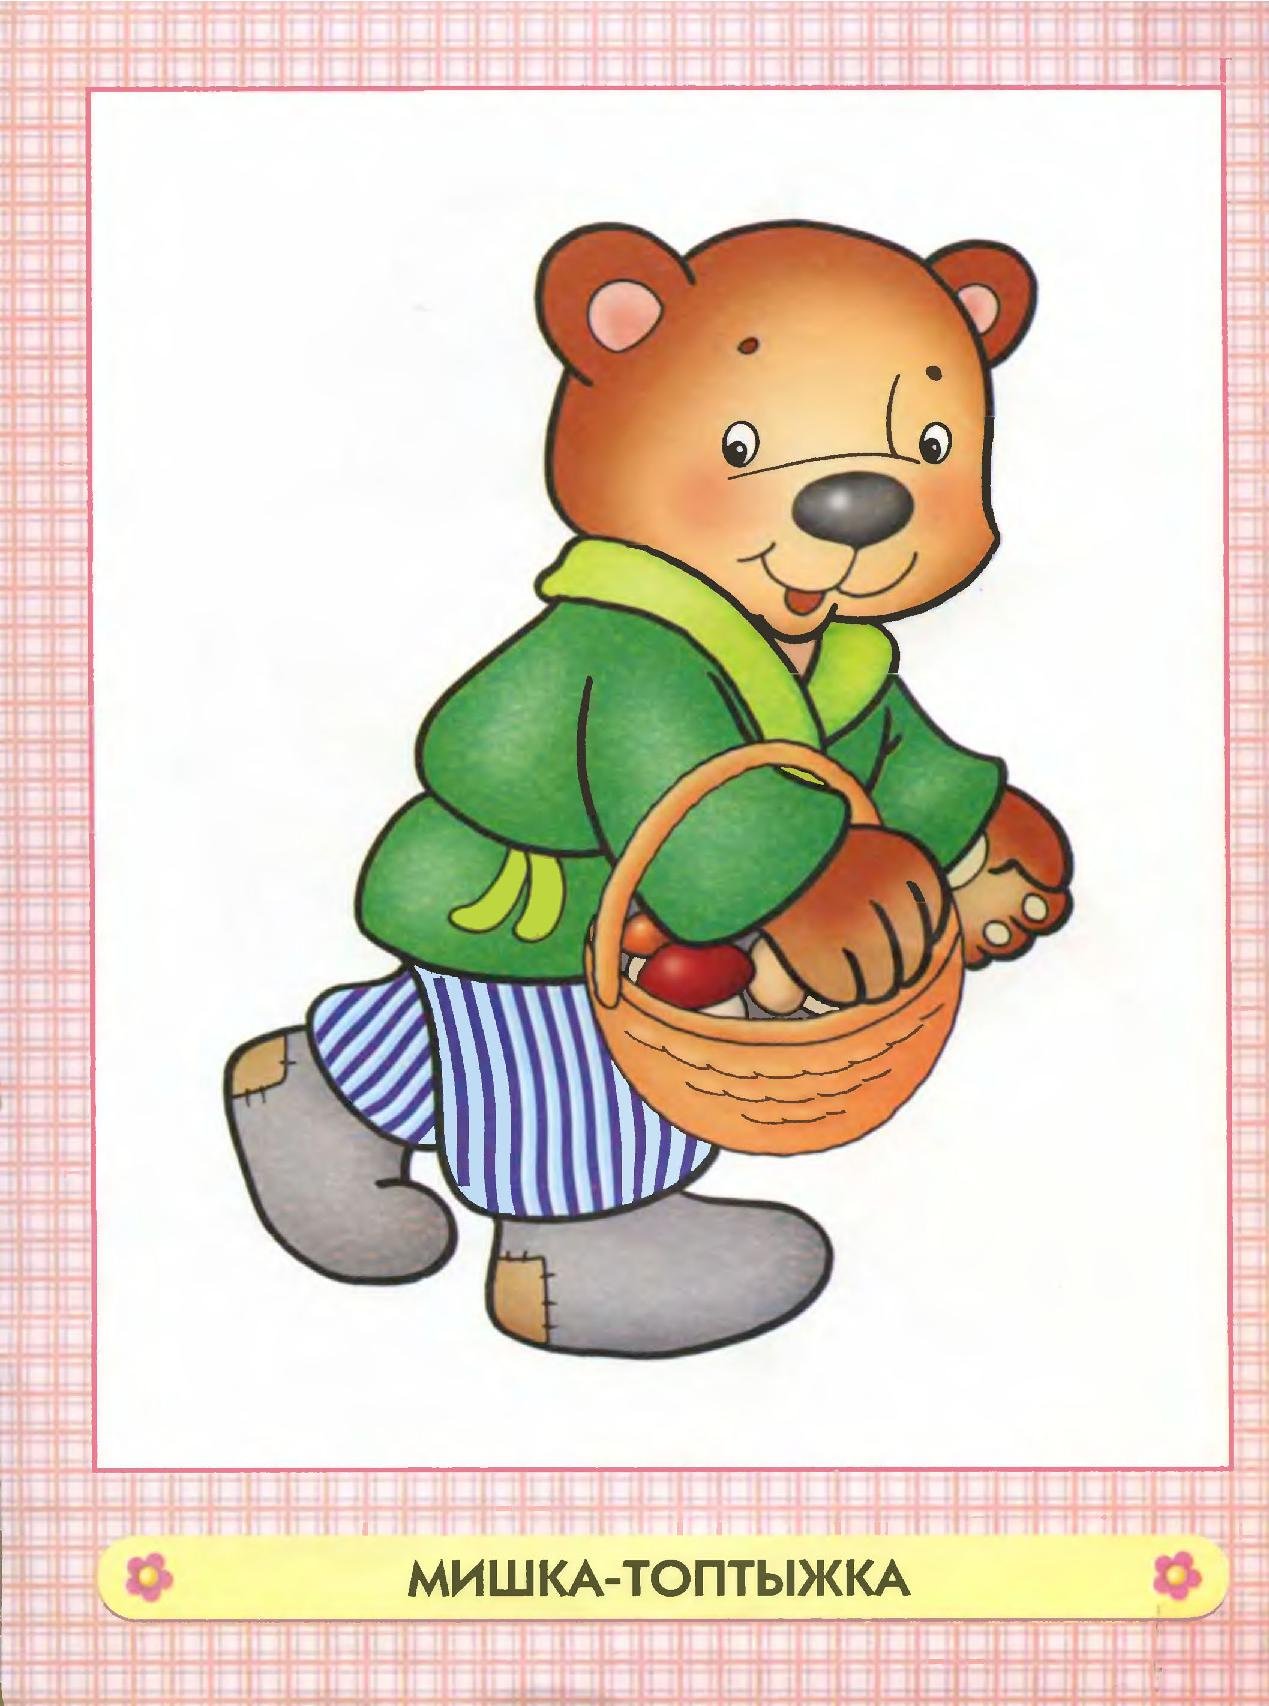 Вдруг упала шишка. Медведь сказочный. Мишка косолапый. Медведь из сказки. Мишка картинка для детей.